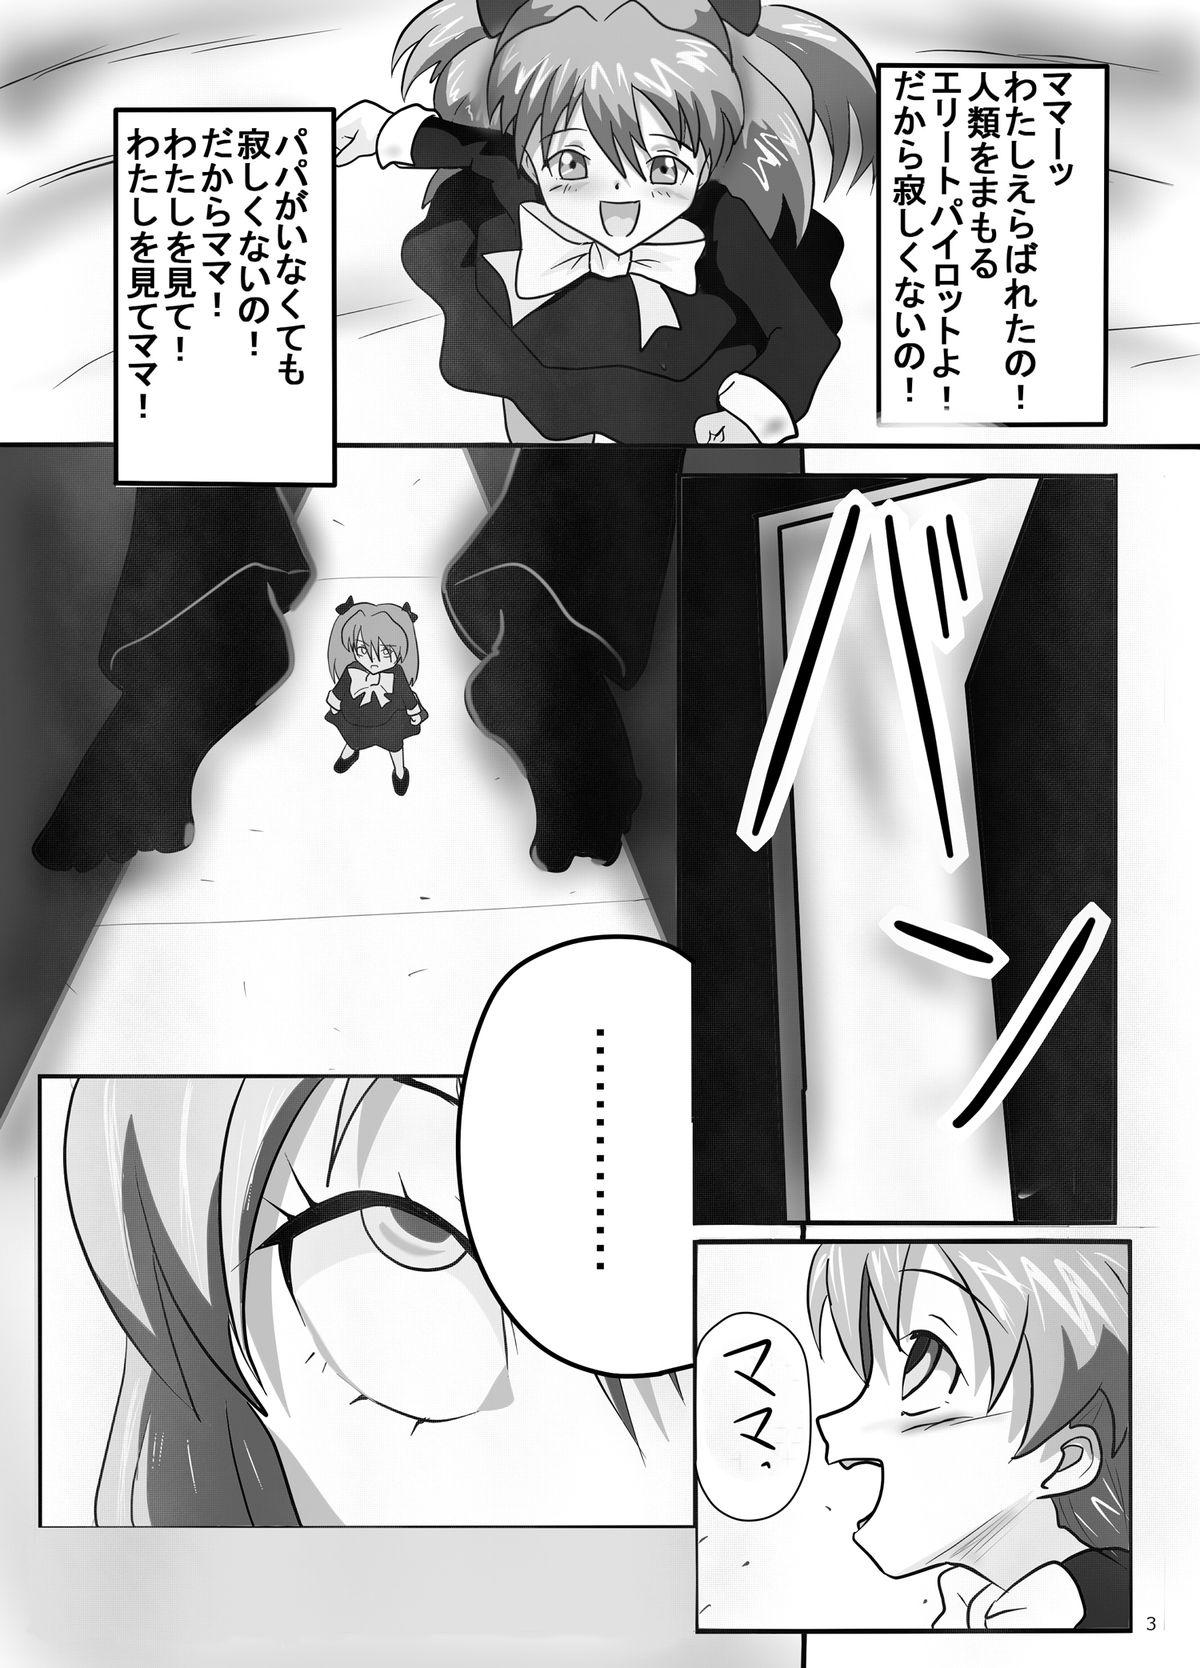 Banging Ito Asuna Rape - Neon genesis evangelion Blow - Page 3